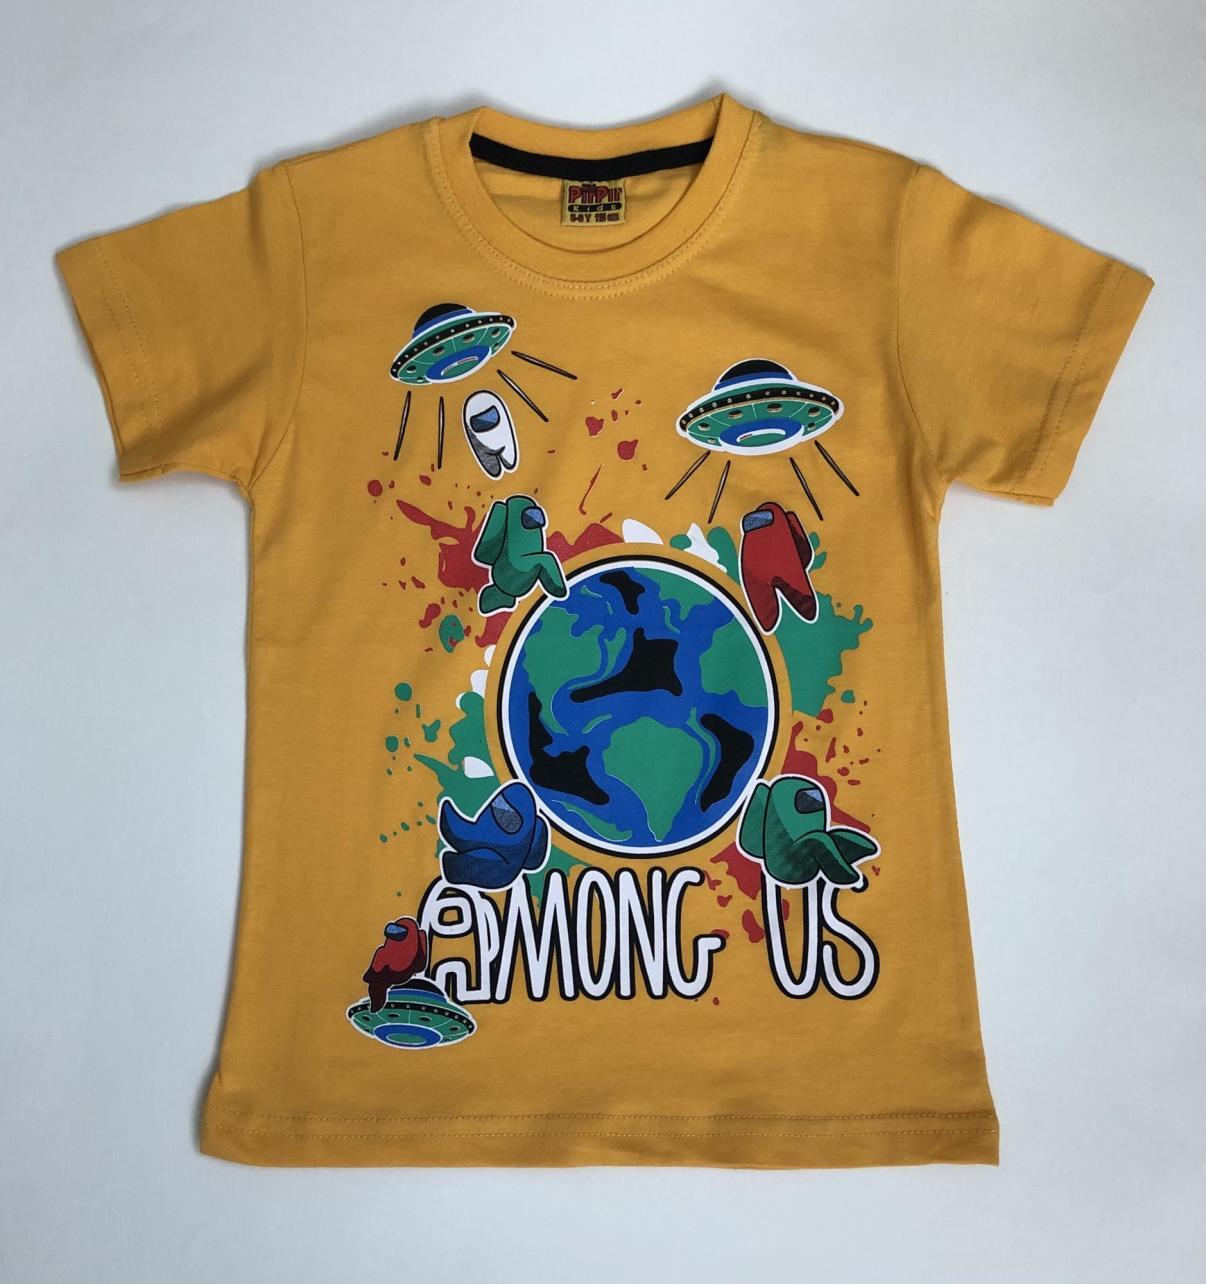 Озон футболки с надписями. Футболка Озон. Самые дешевые товары на Озоне футболки. Футболки в Озоне по 99 руб. Цветные футболки на Озоне.